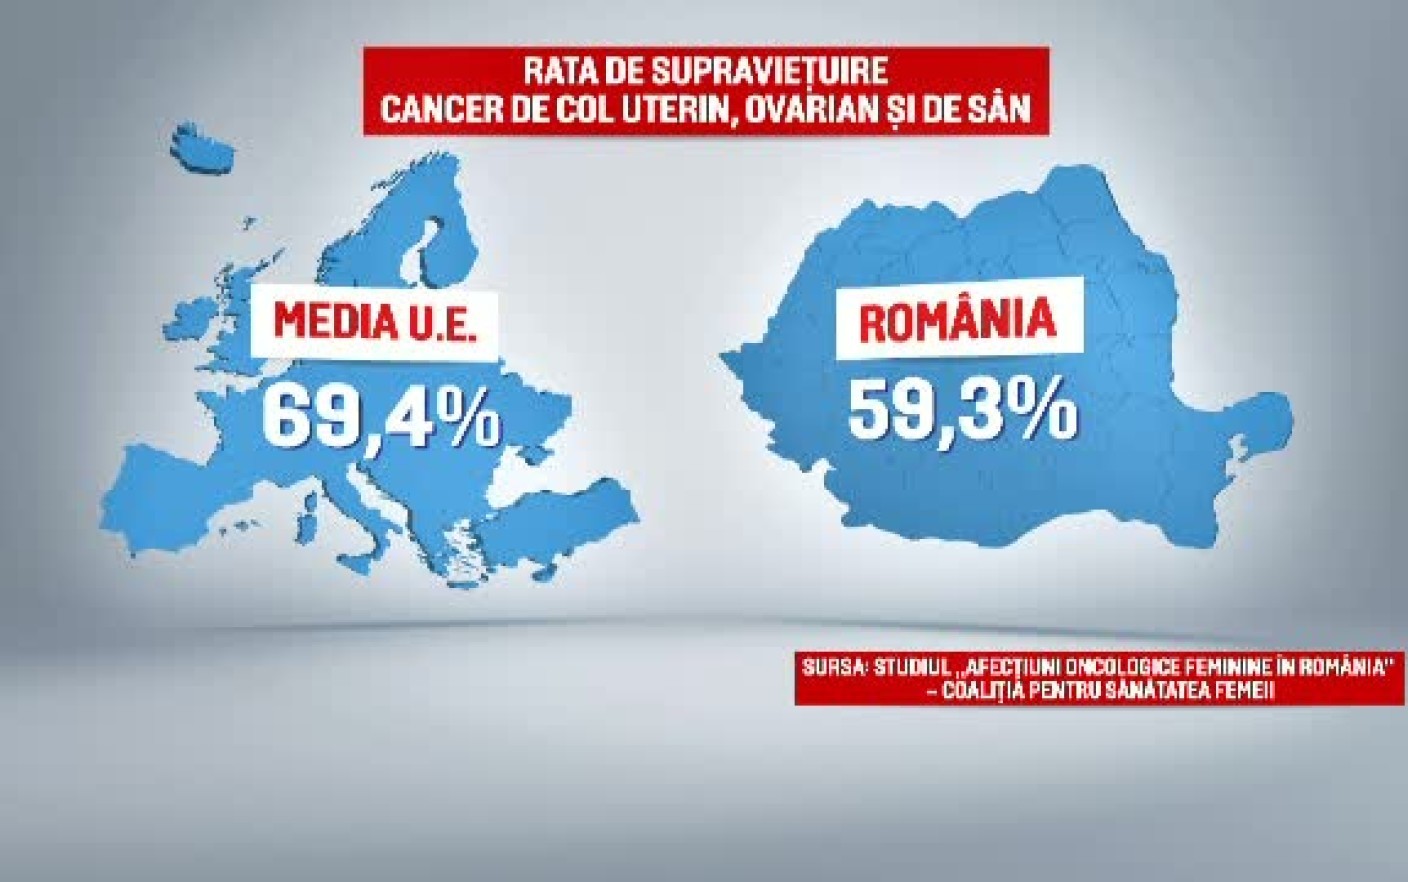 Statistici cancer pentru Romania